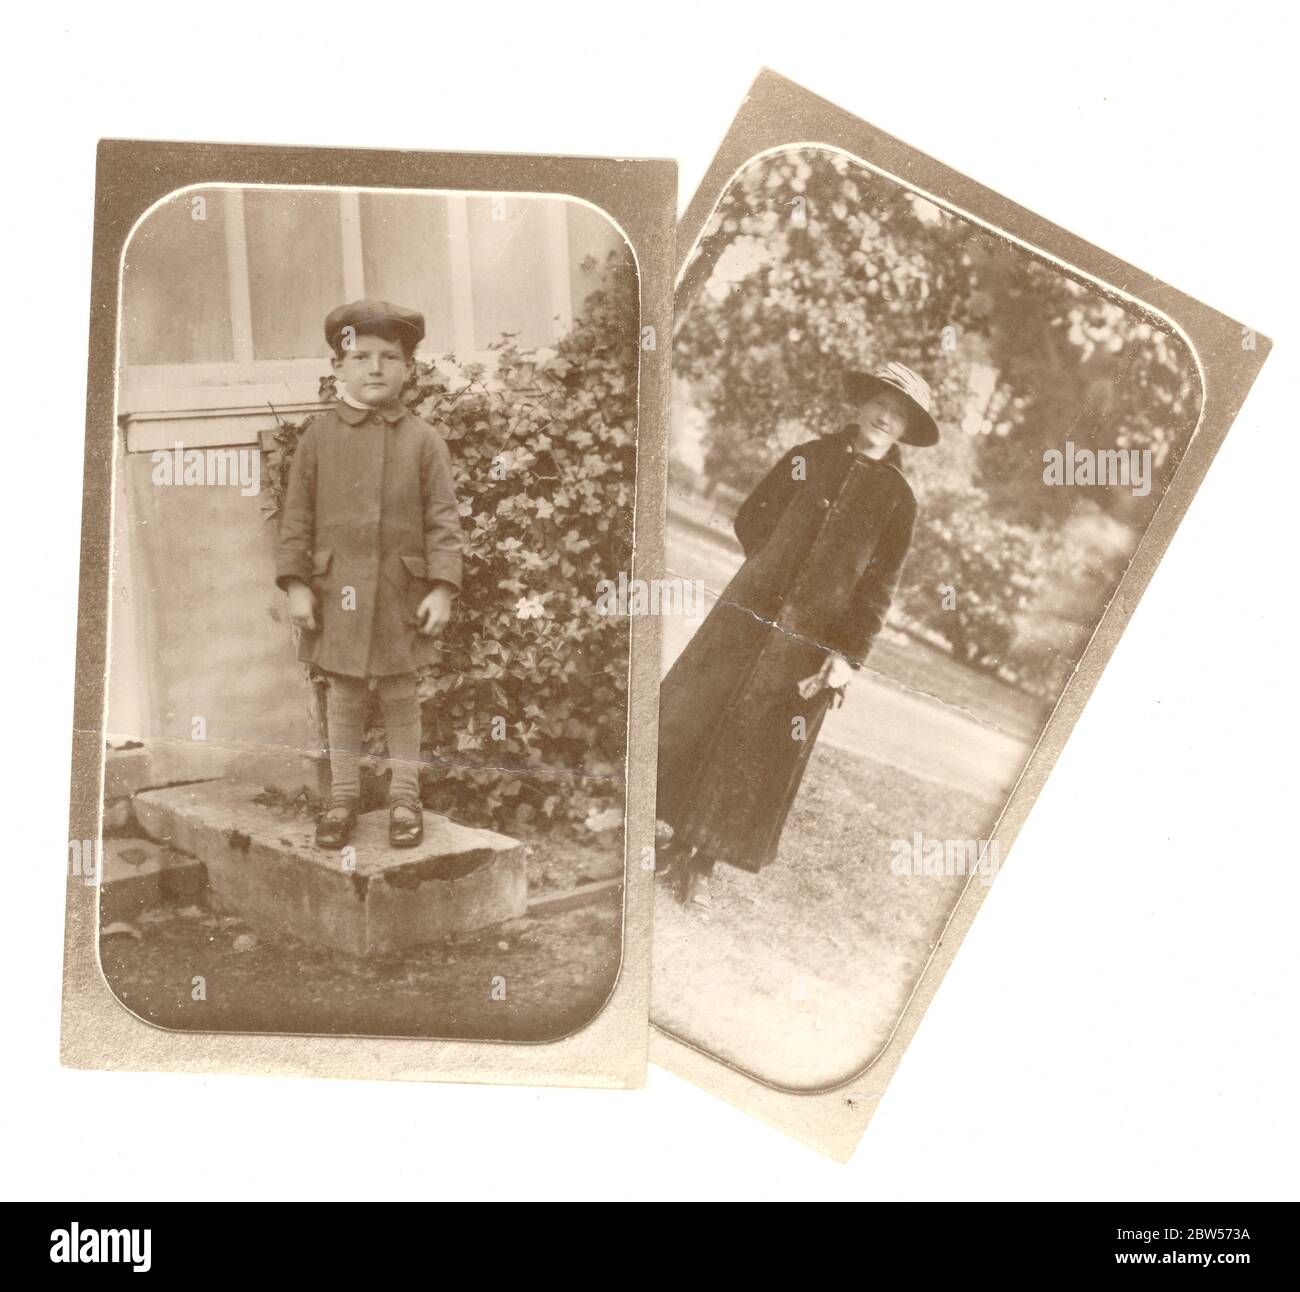 Copie du début des années 1900 d'une photo édouardienne prise d'un album de photos, représentant une femme sous un long manteau et un petit garçon portant une casquette, debout à l'extérieur, la photo originale est vers 1910, Royaume-Uni Banque D'Images